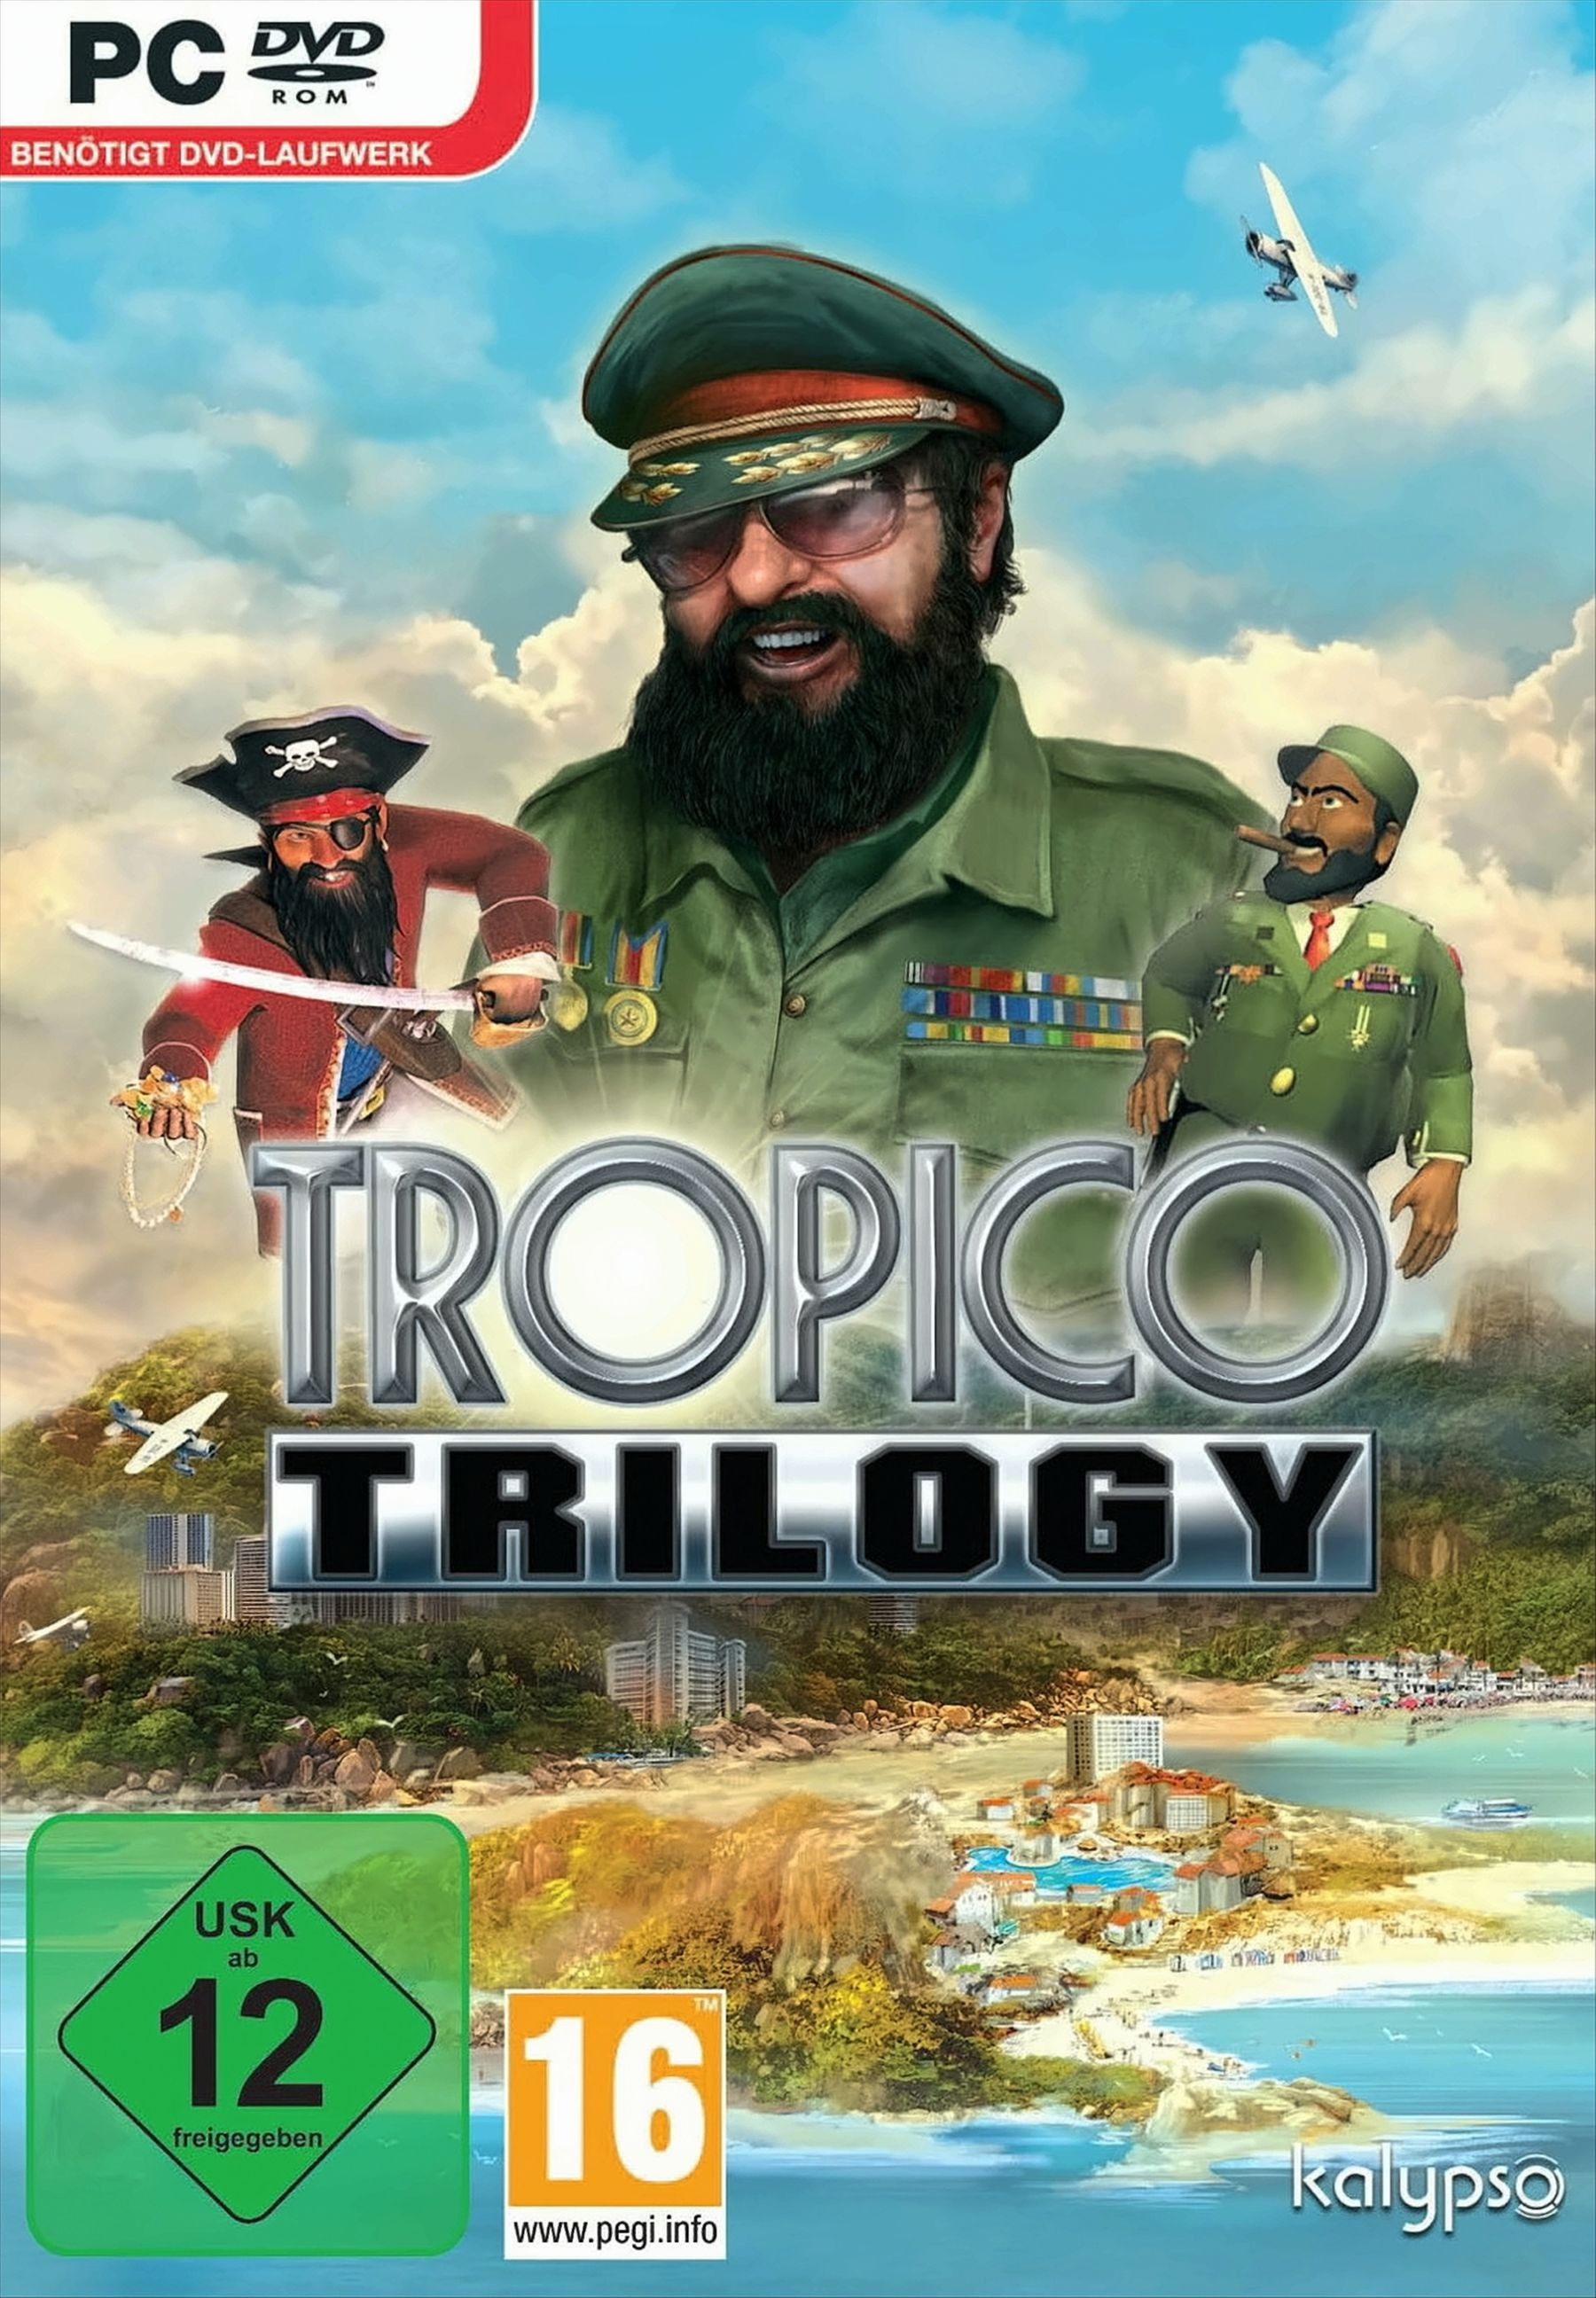 [PC] Trilogy Tropico -